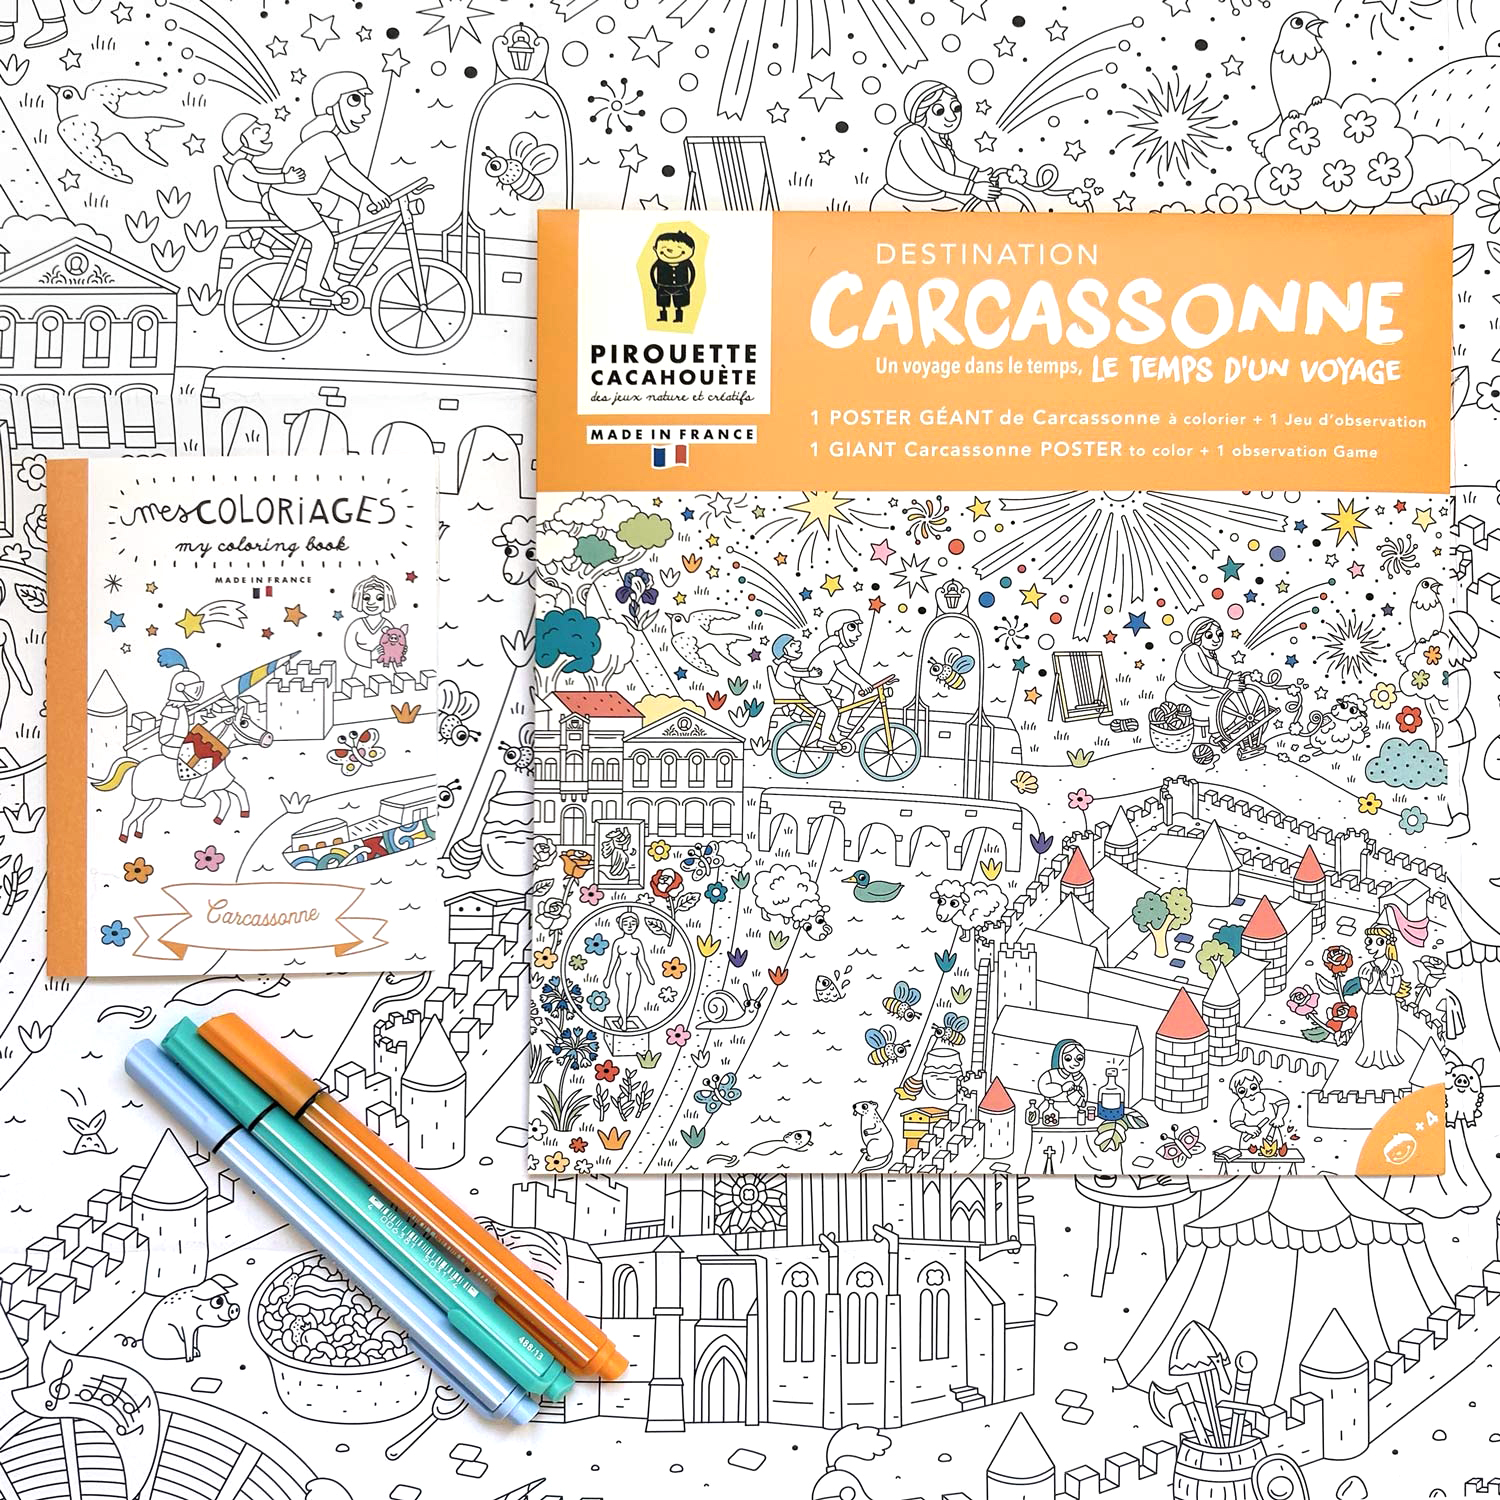 Partenariat ville de Carcassonne